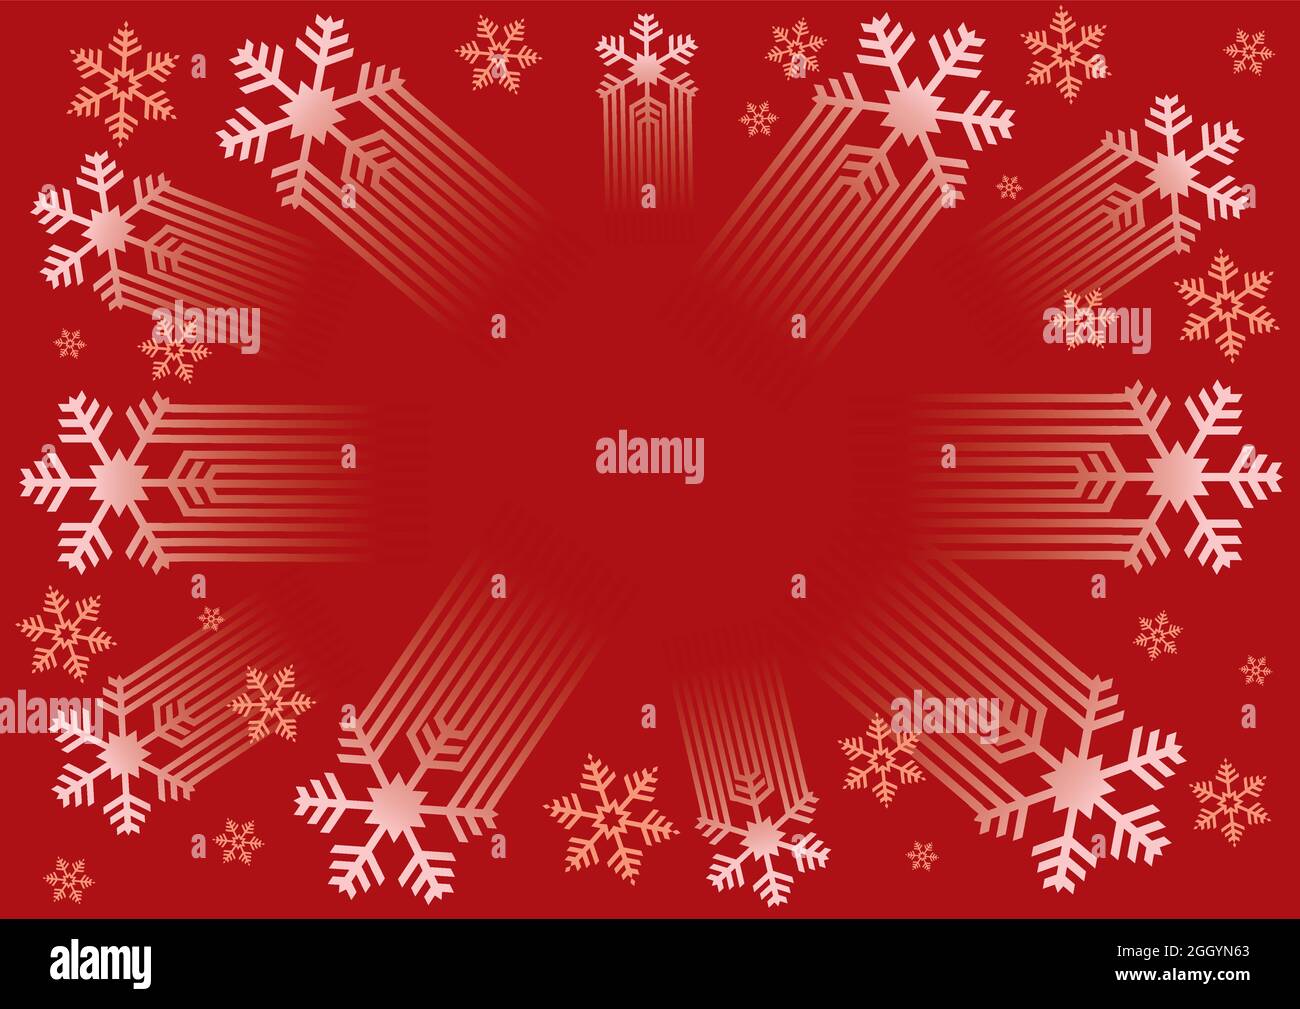 Sfondo fiocchi di neve di Natale, cornice decorativa. Illustrazione di  sfondo rosso con fiocchi di neve stilizzati. Modello di intestazione.  Vettore disponibile Immagine e Vettoriale - Alamy